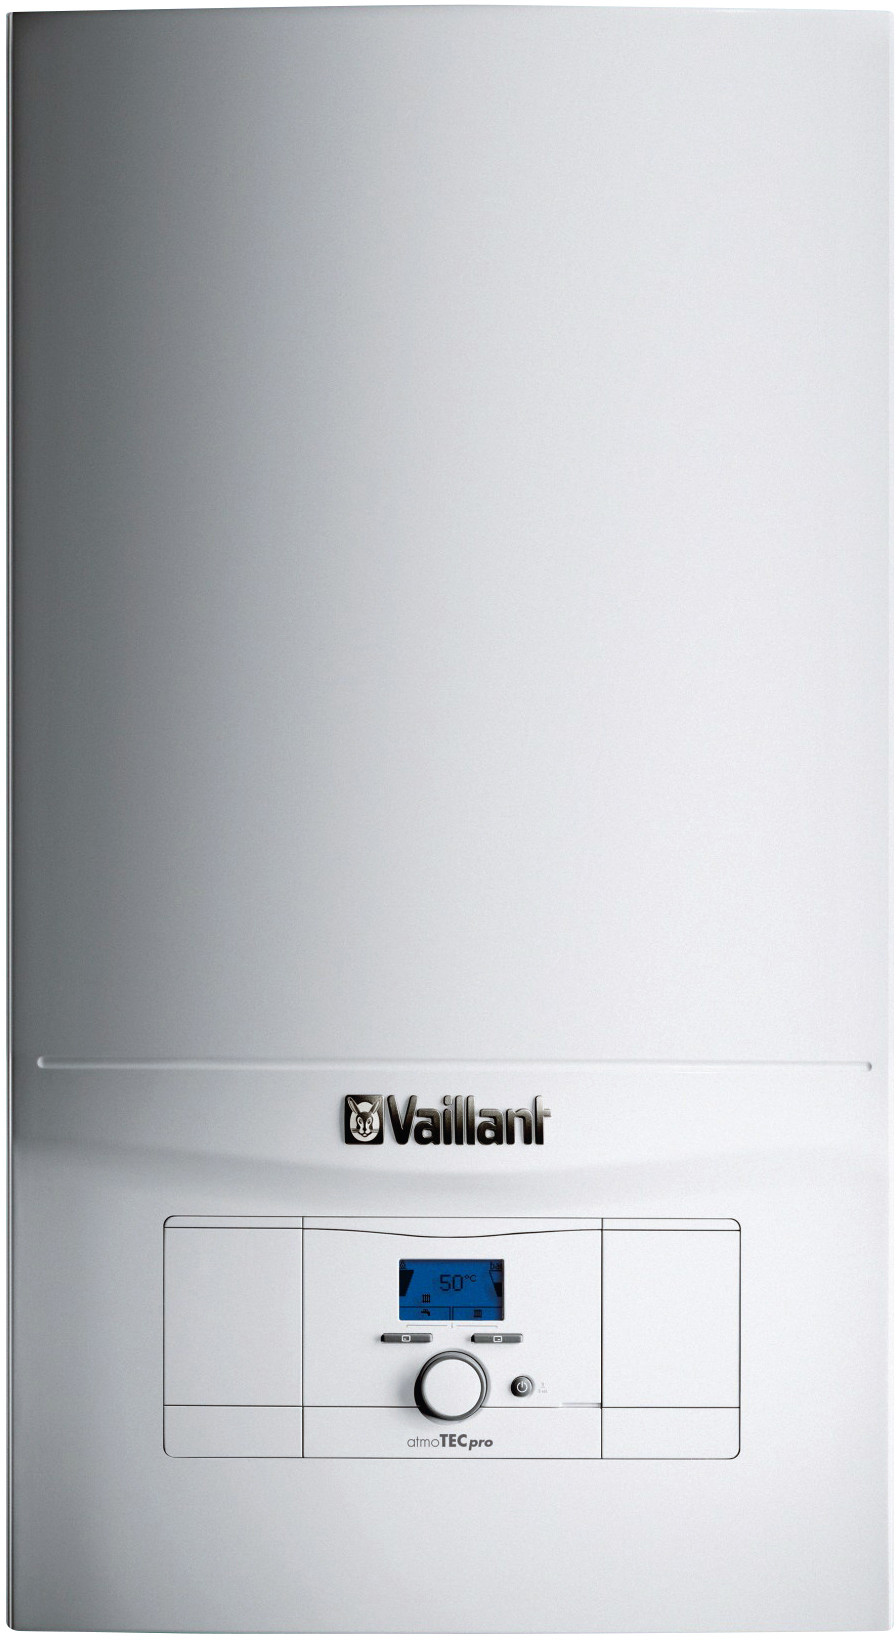 Інструкція газовий котел vaillant димохідний Vaillant atmoTec Pro VUW 200/5-3